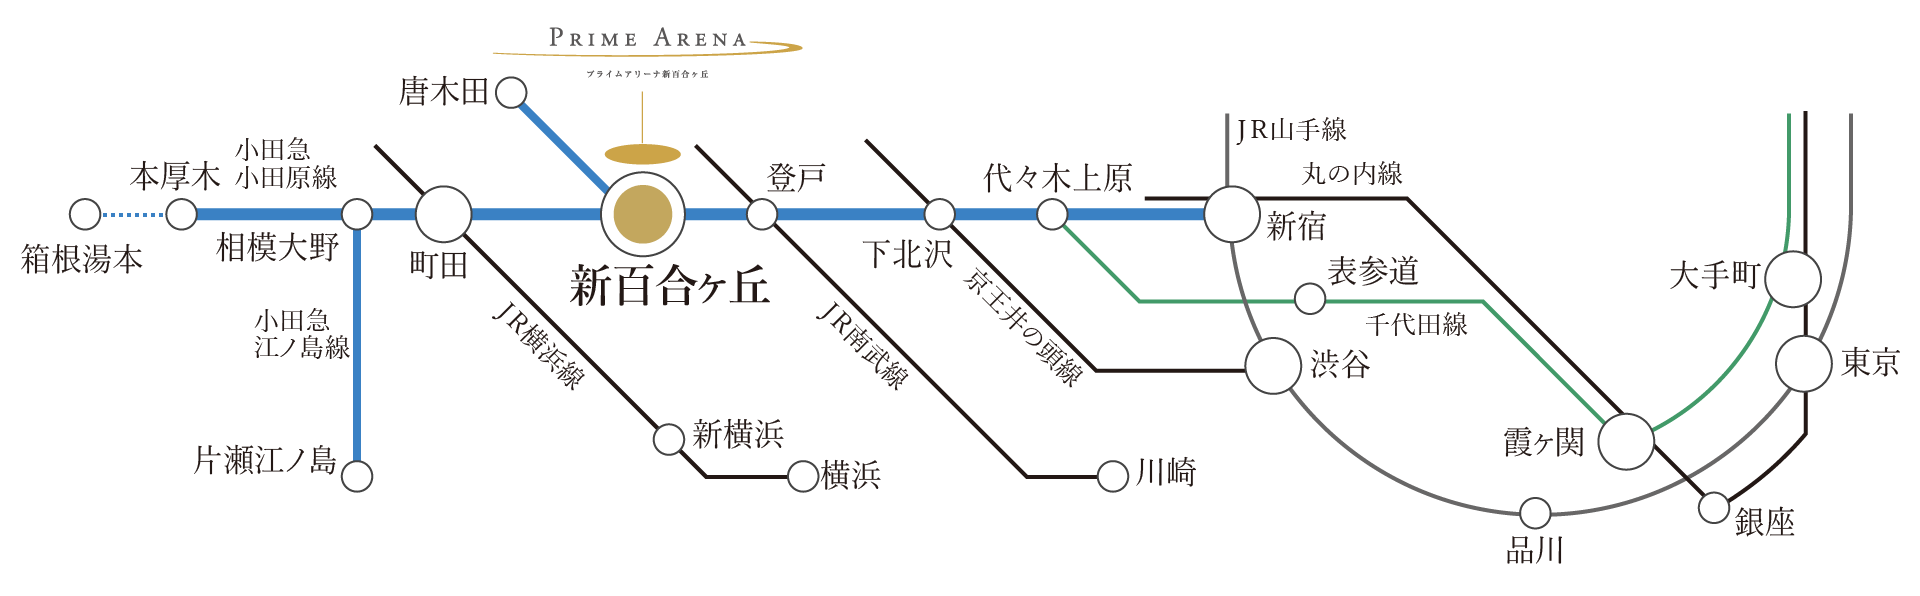 新宿へ直通3駅21分。千代田線乗り入れで霞ヶ関・大手町へも直通アクセス。